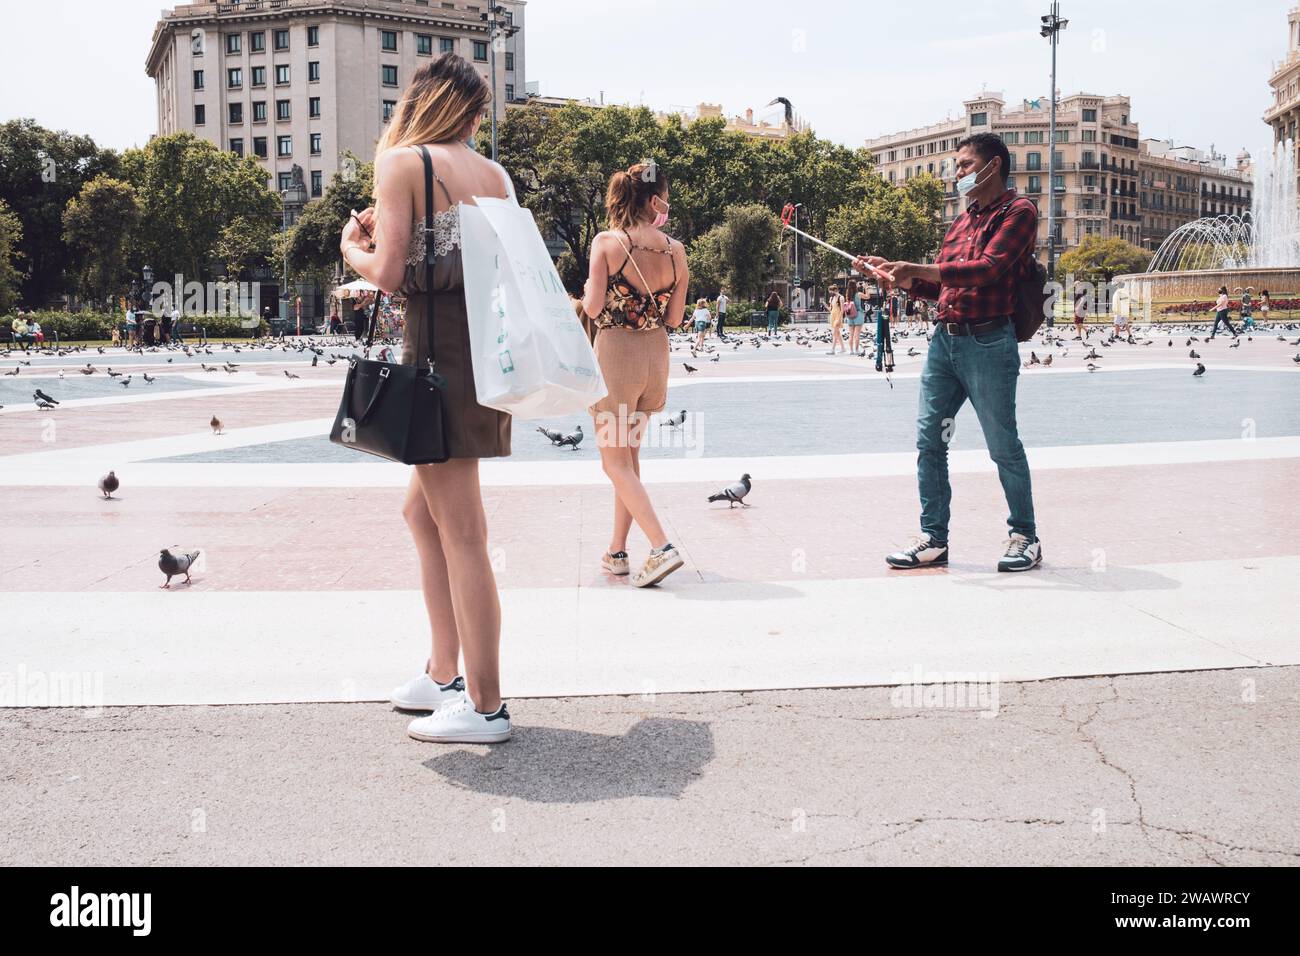 Barcelone, Espagne - 5 juin 2021 : un vendeur de rue tente de vendre un bâton à selfie à deux filles du shopping Banque D'Images